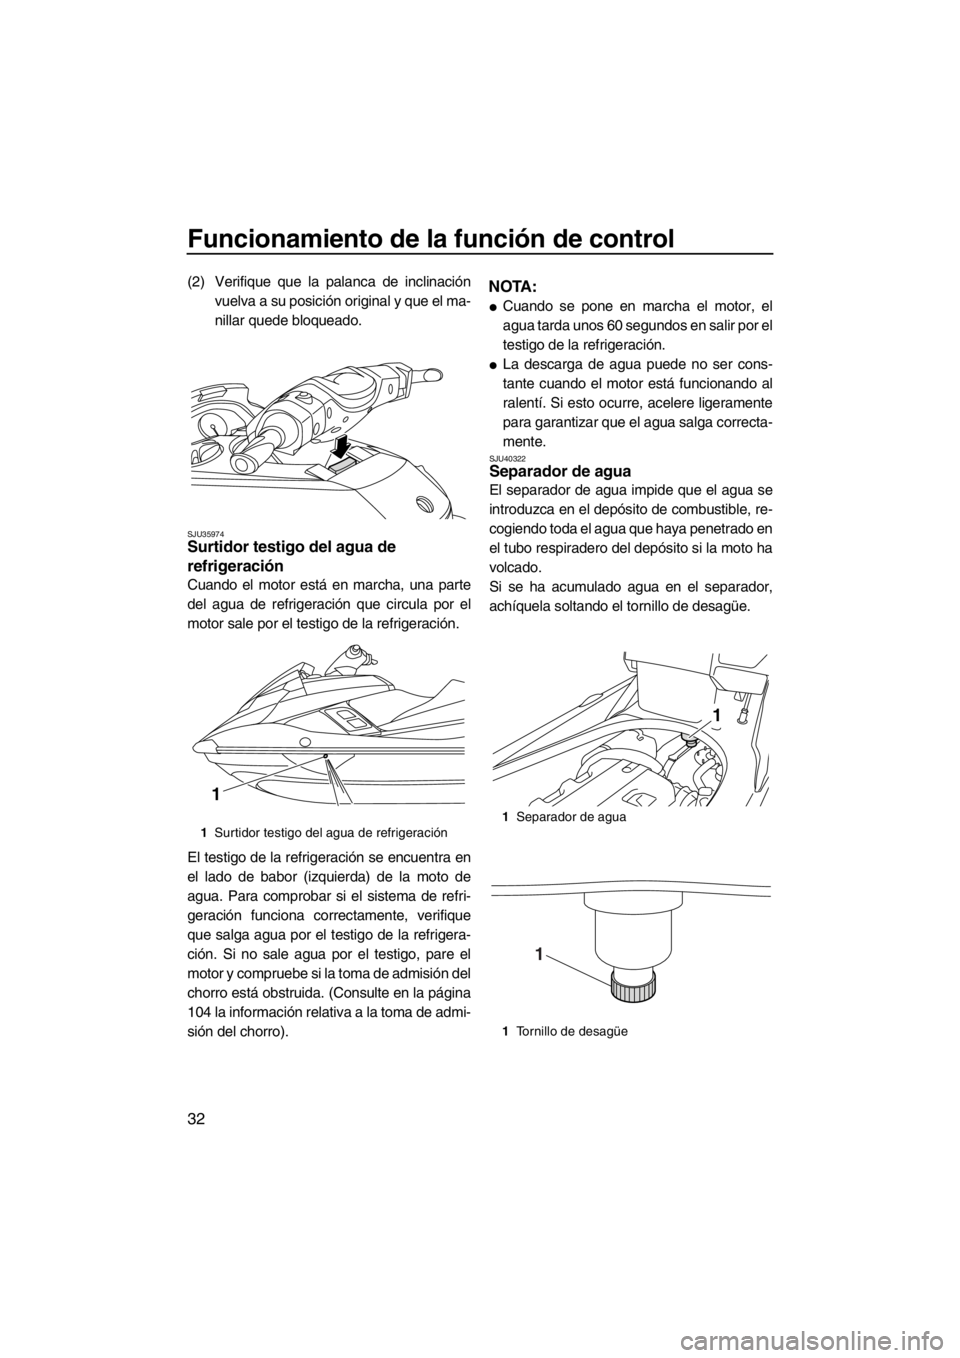 YAMAHA FX HO CRUISER 2012  Manuale de Empleo (in Spanish) Funcionamiento de la función de control
32
(2) Verifique que la palanca de inclinación
vuelva a su posición original y que el ma-
nillar quede bloqueado.
SJU35974Surtidor testigo del agua de 
refri